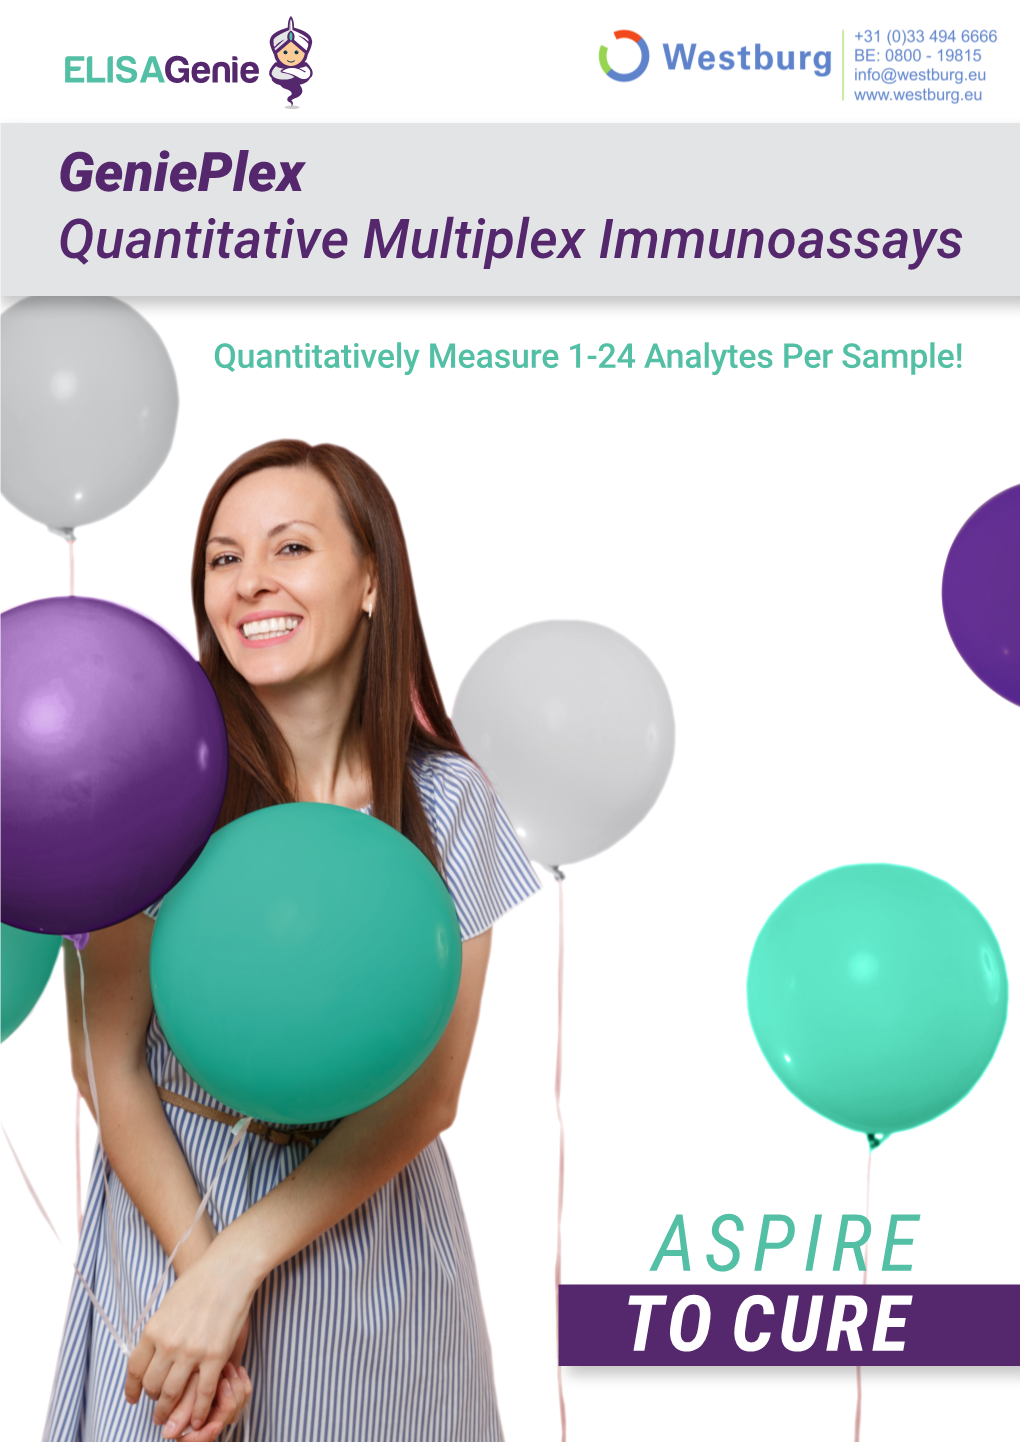 Genieplex Quantitative Multiplex Immunoassays